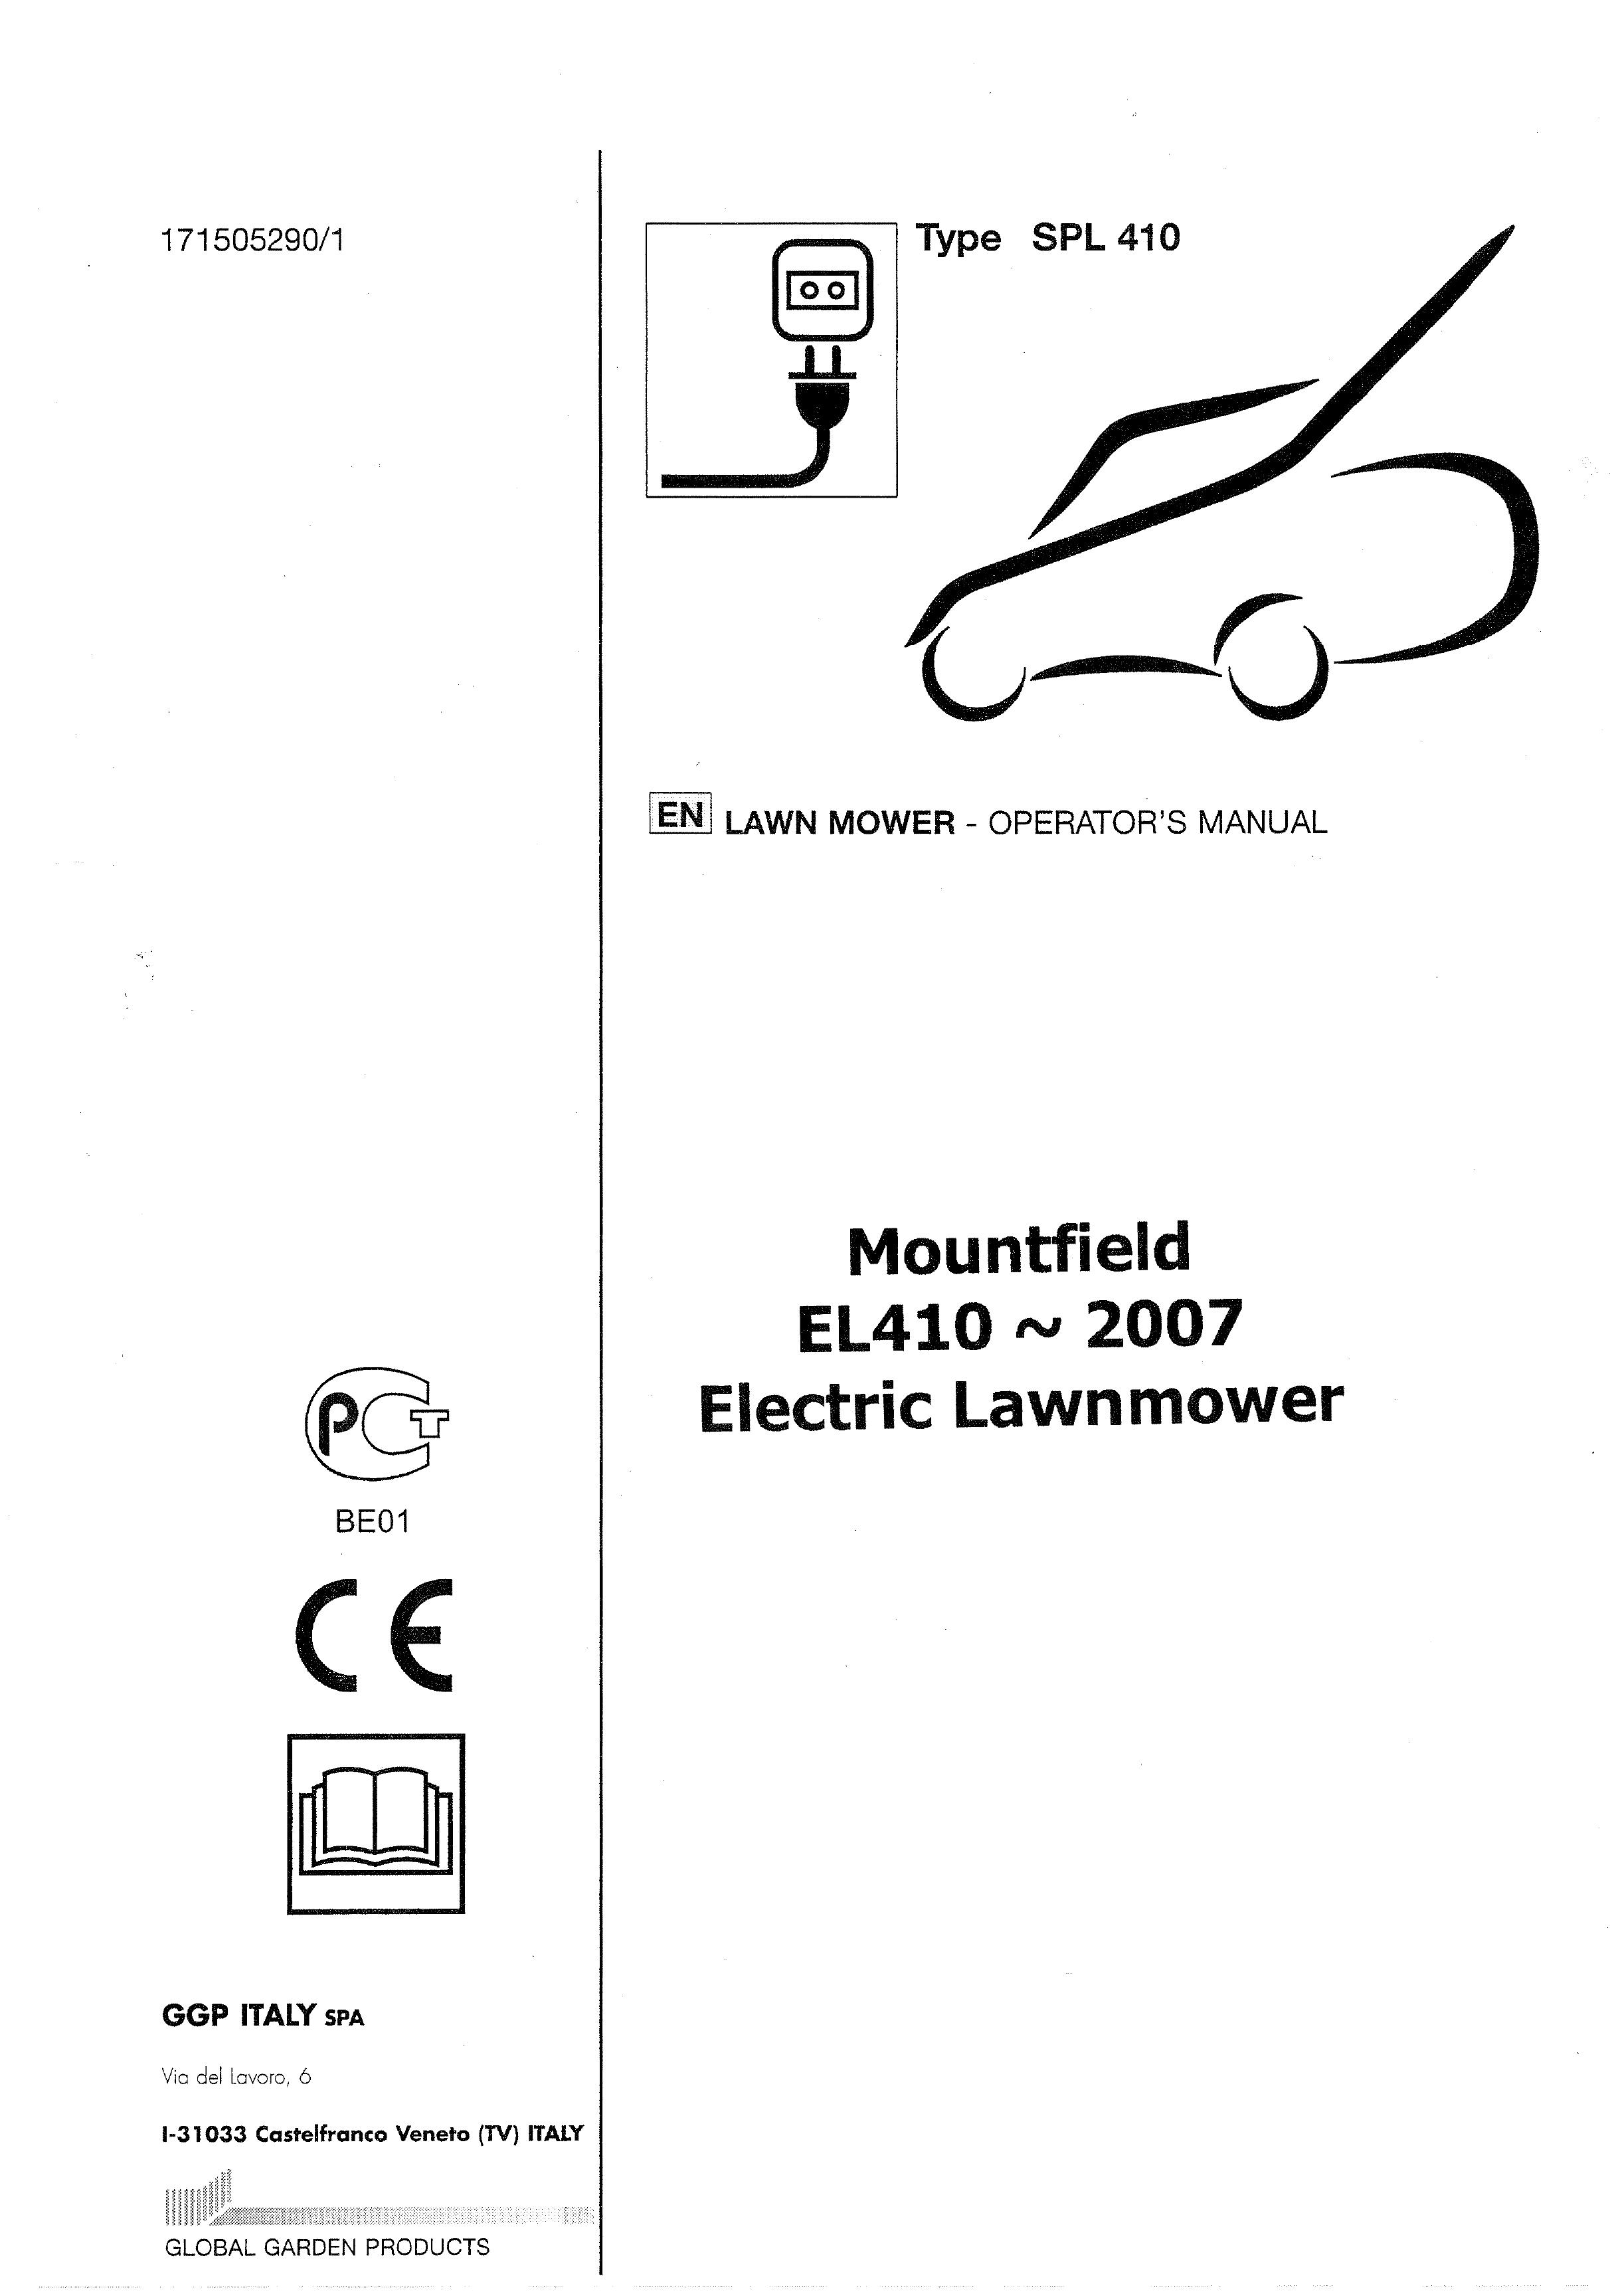 Mountfield SPL 410 Lawn Mower User Manual